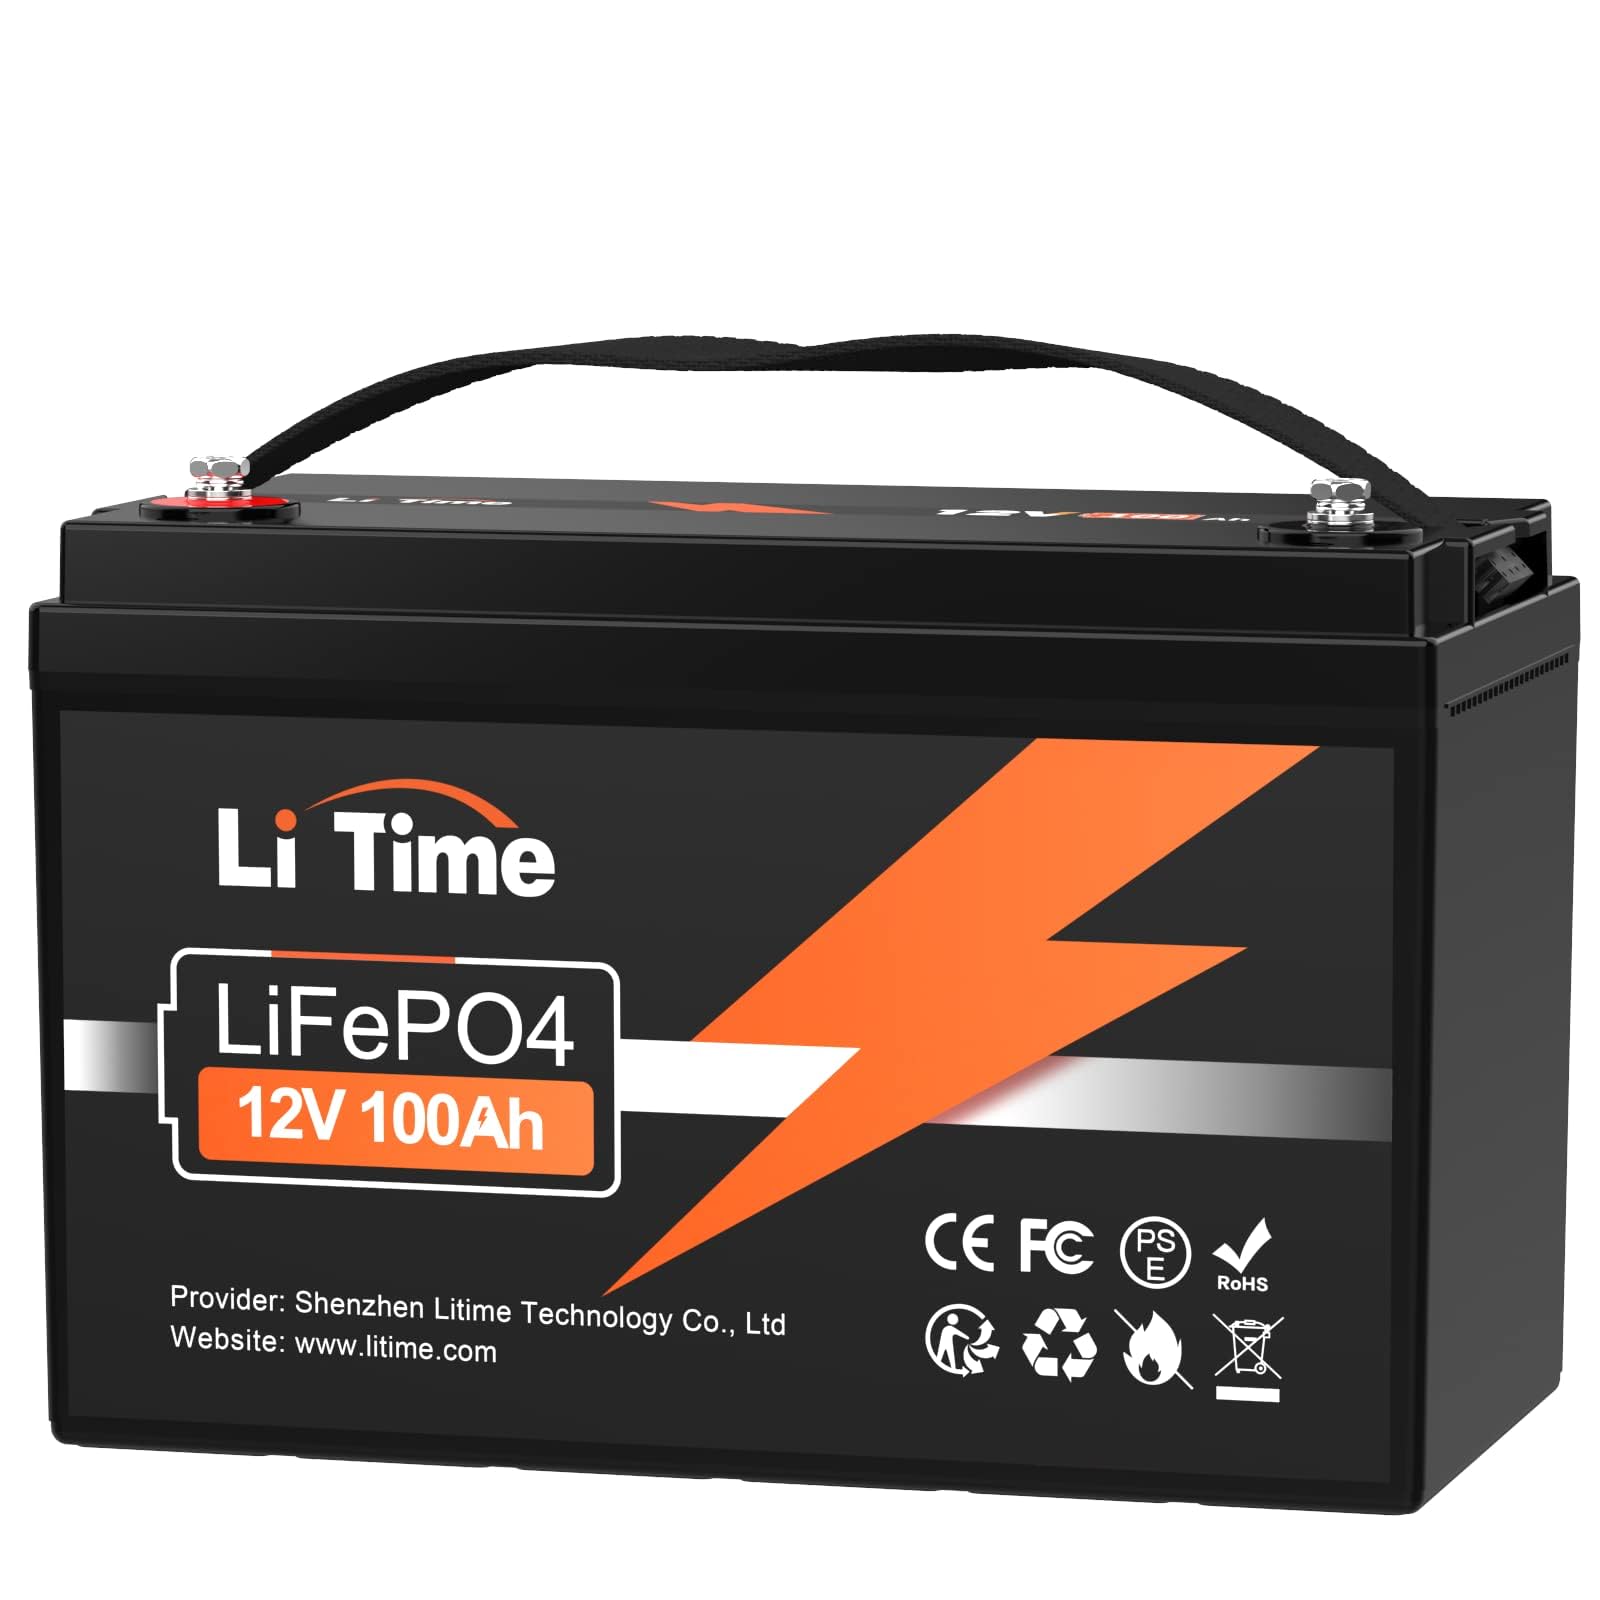 LiTime 12V 100Ah LiFePO4 Batterie, 1280Wh Lithium Akku mit 100A BMS, Max. 15000 Zyklen Ladezyklen, Unterstützung in Serie/Parallelschaltung, Perfekter Ersatz für Blei-Säure für Wohnmobile, Solaranlage von Litime